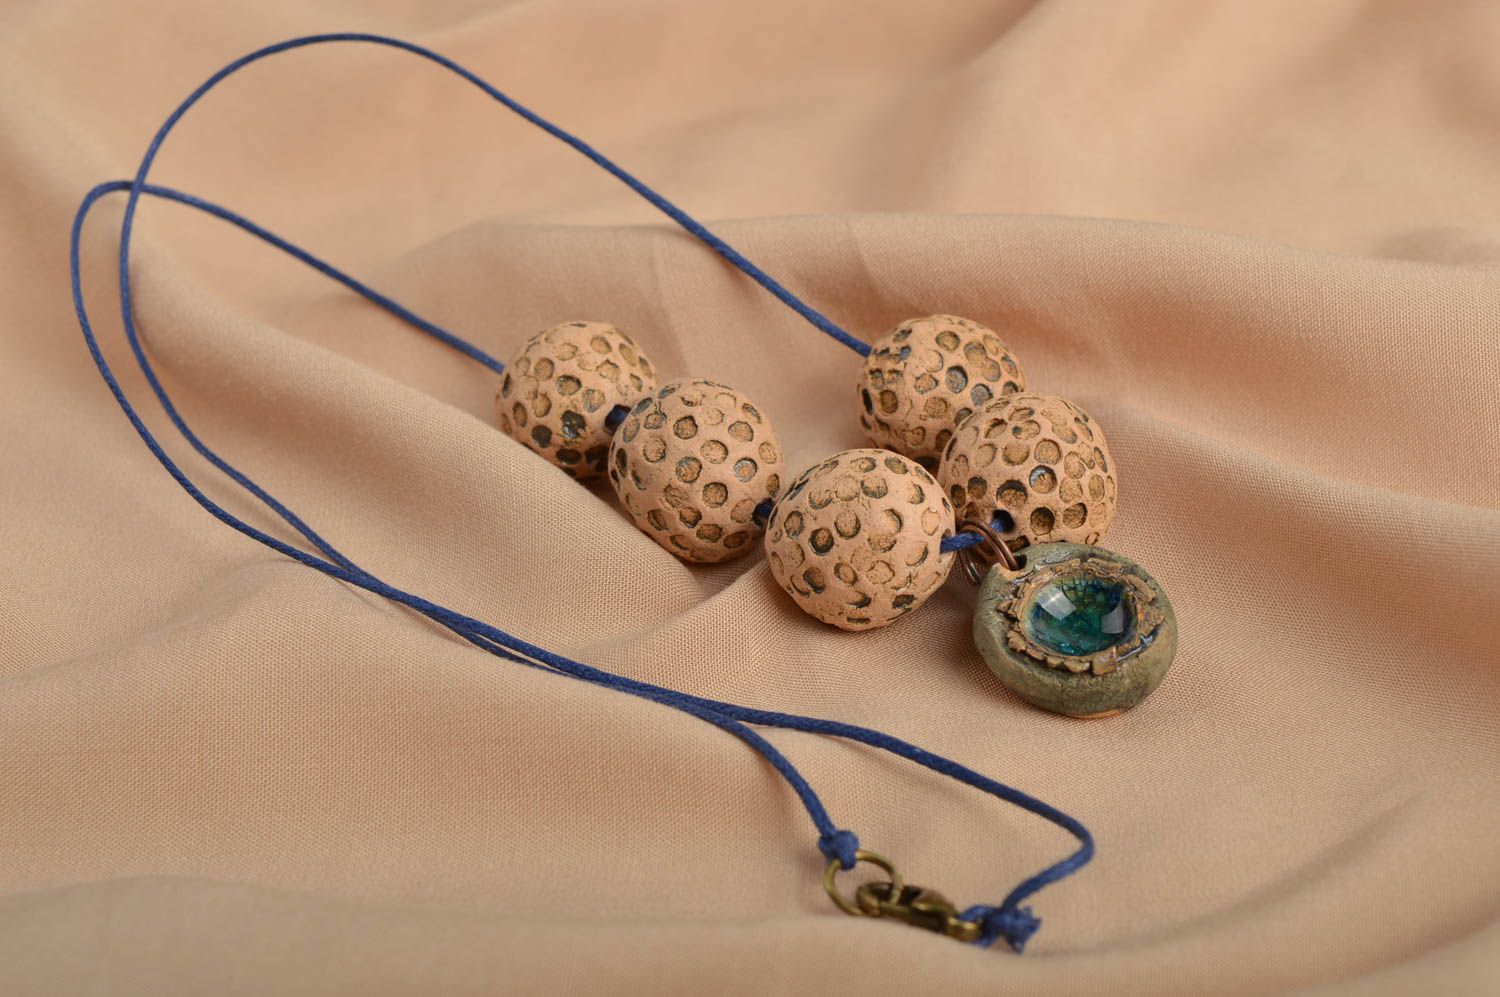 Керамическое украшение кулон ручной работы глиняная подвеска на шею с буиснами фото 1